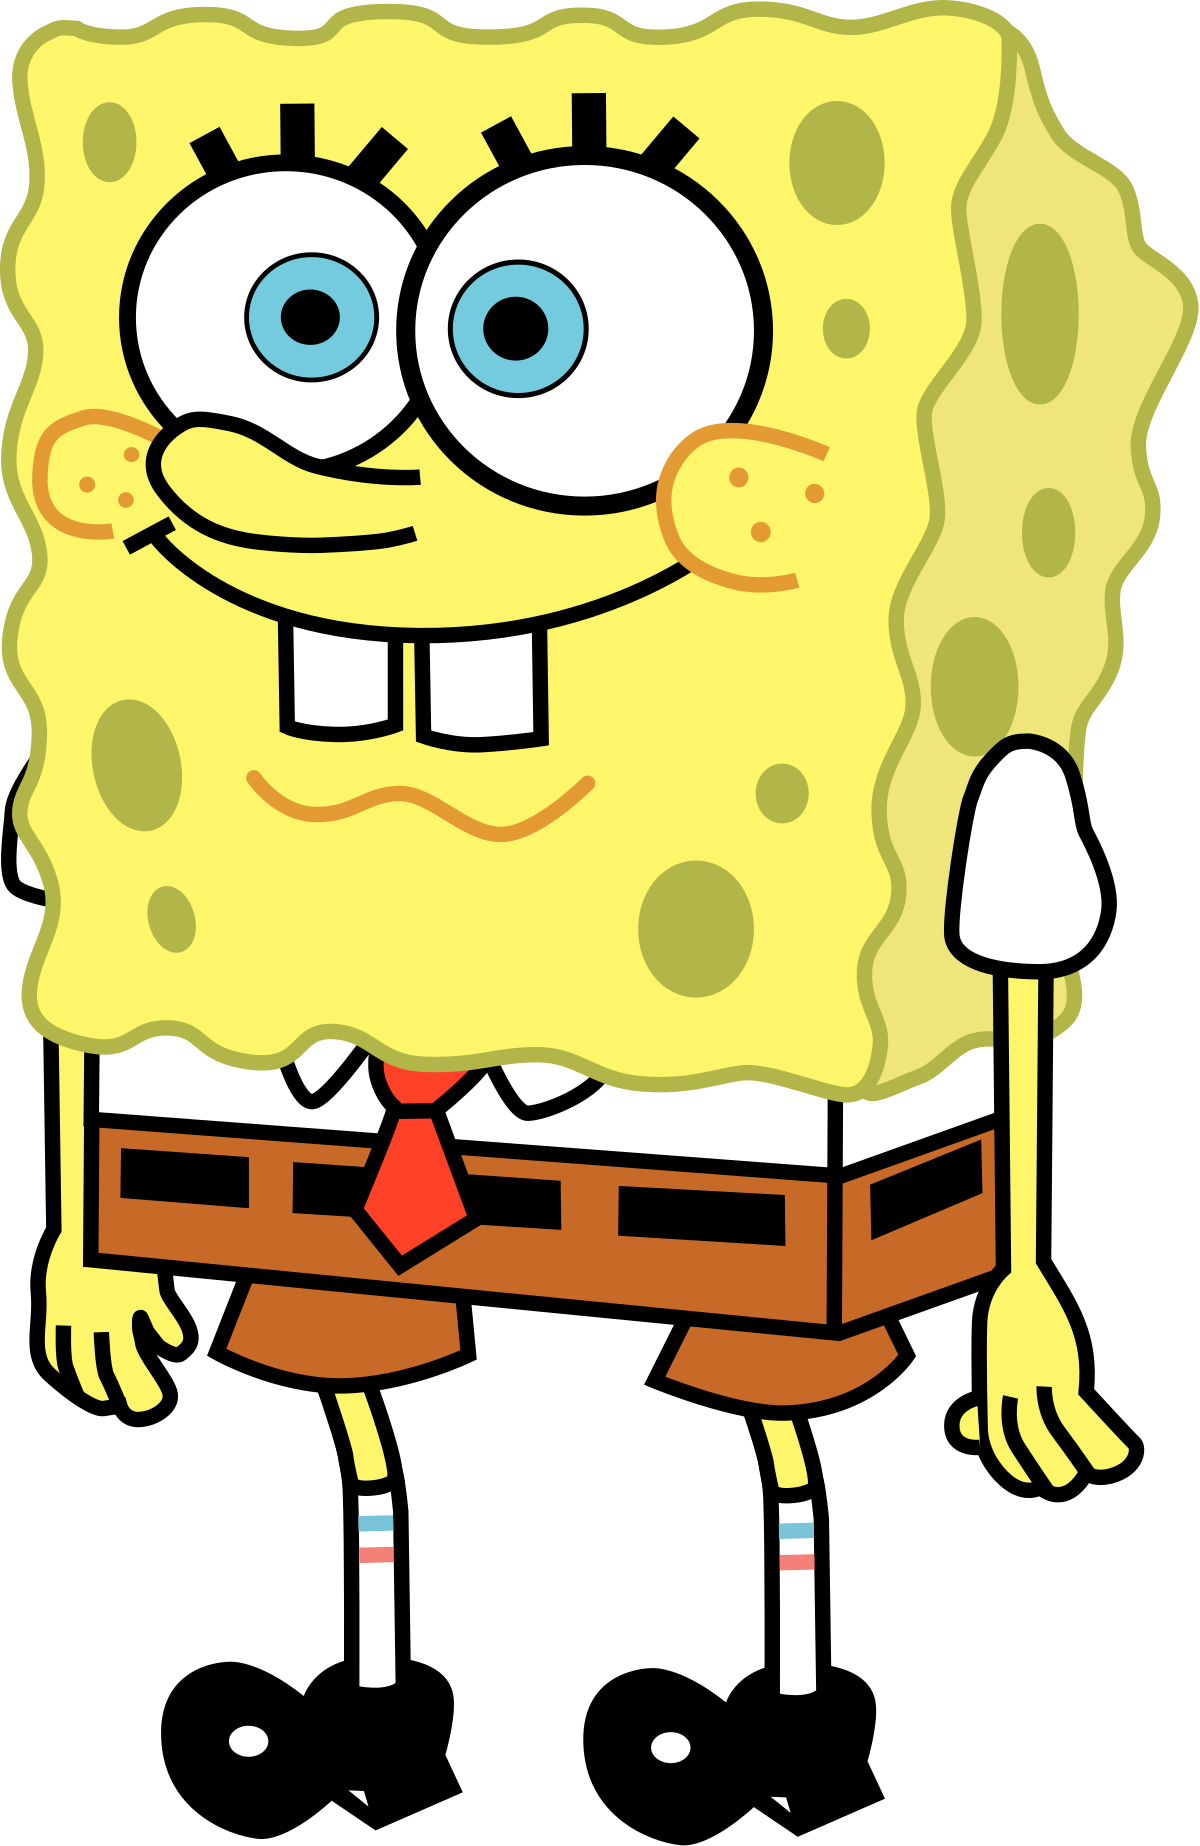 Spongebob Squarepants - Spongebob Squarepants (1200x1846)